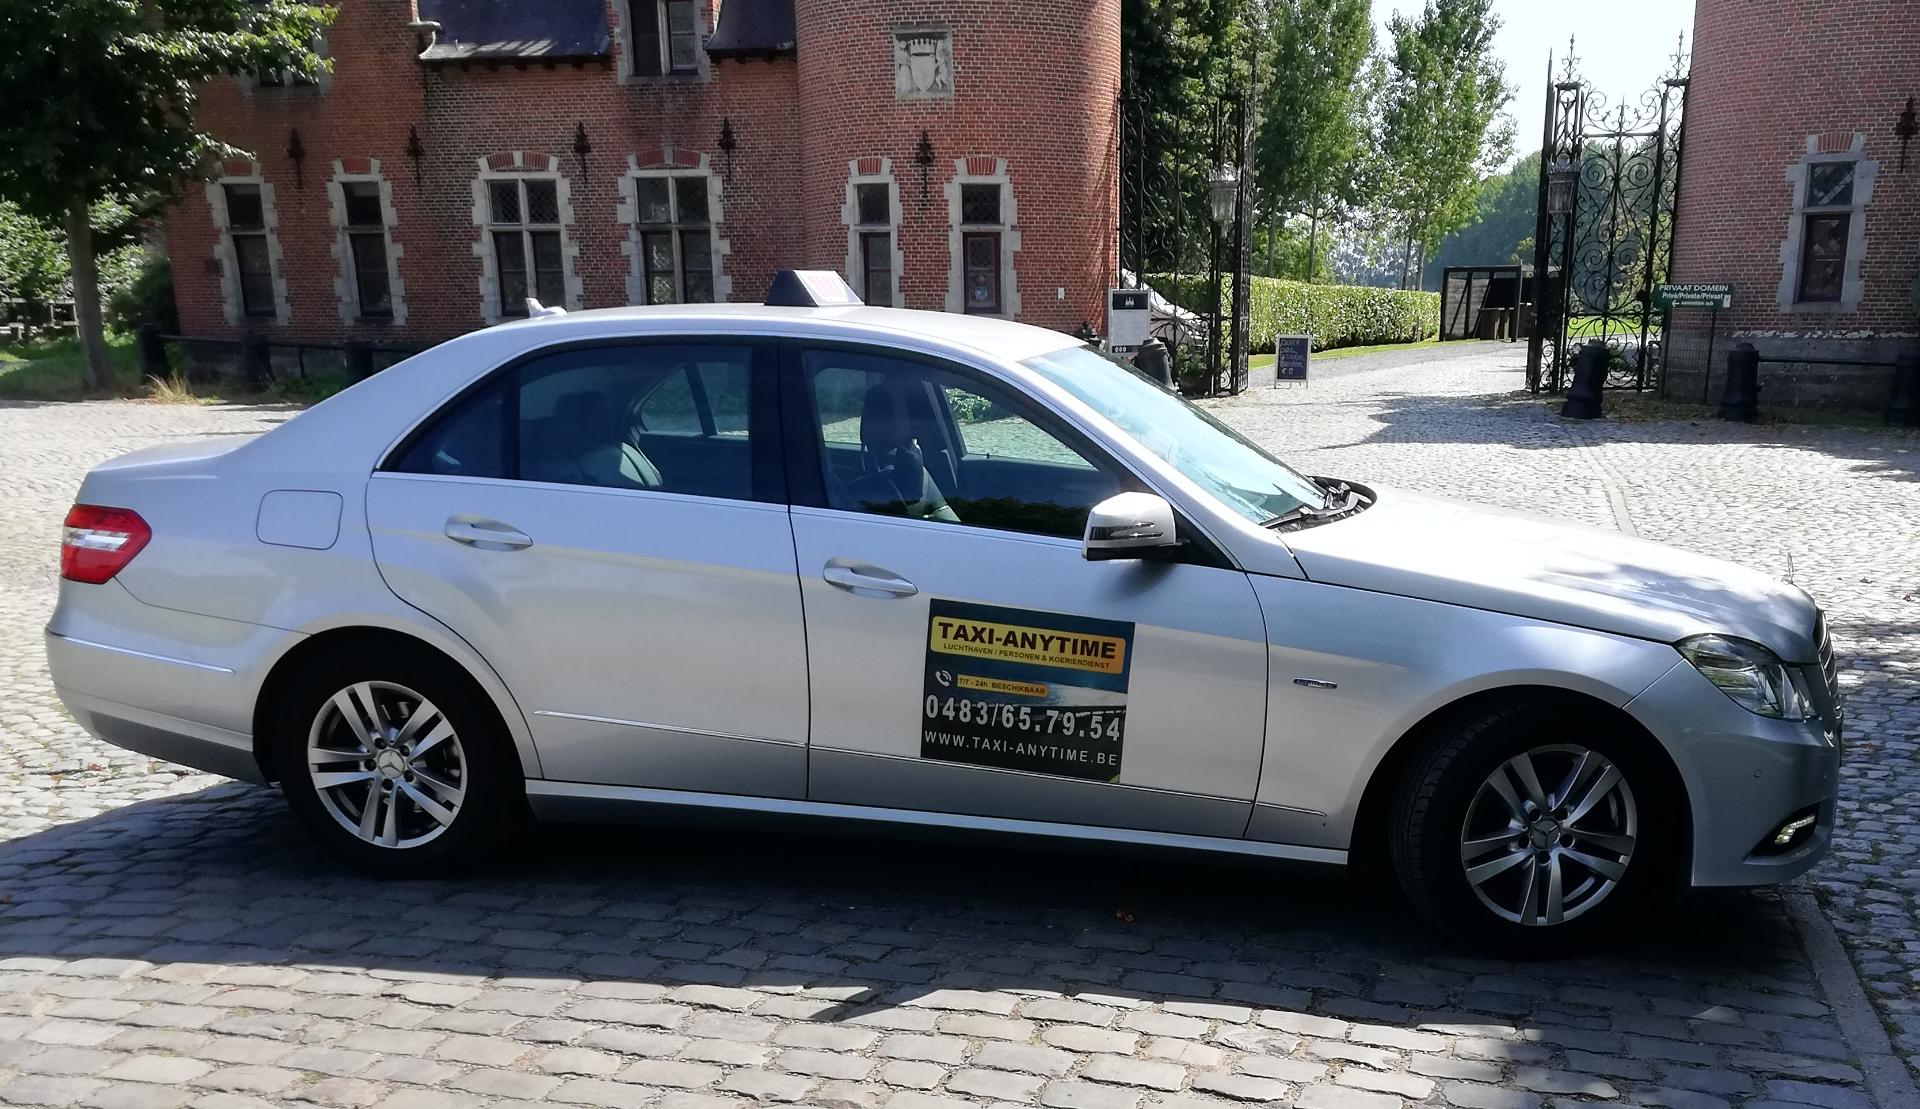 transportbedrijven Wommelgem Taxi Anytime